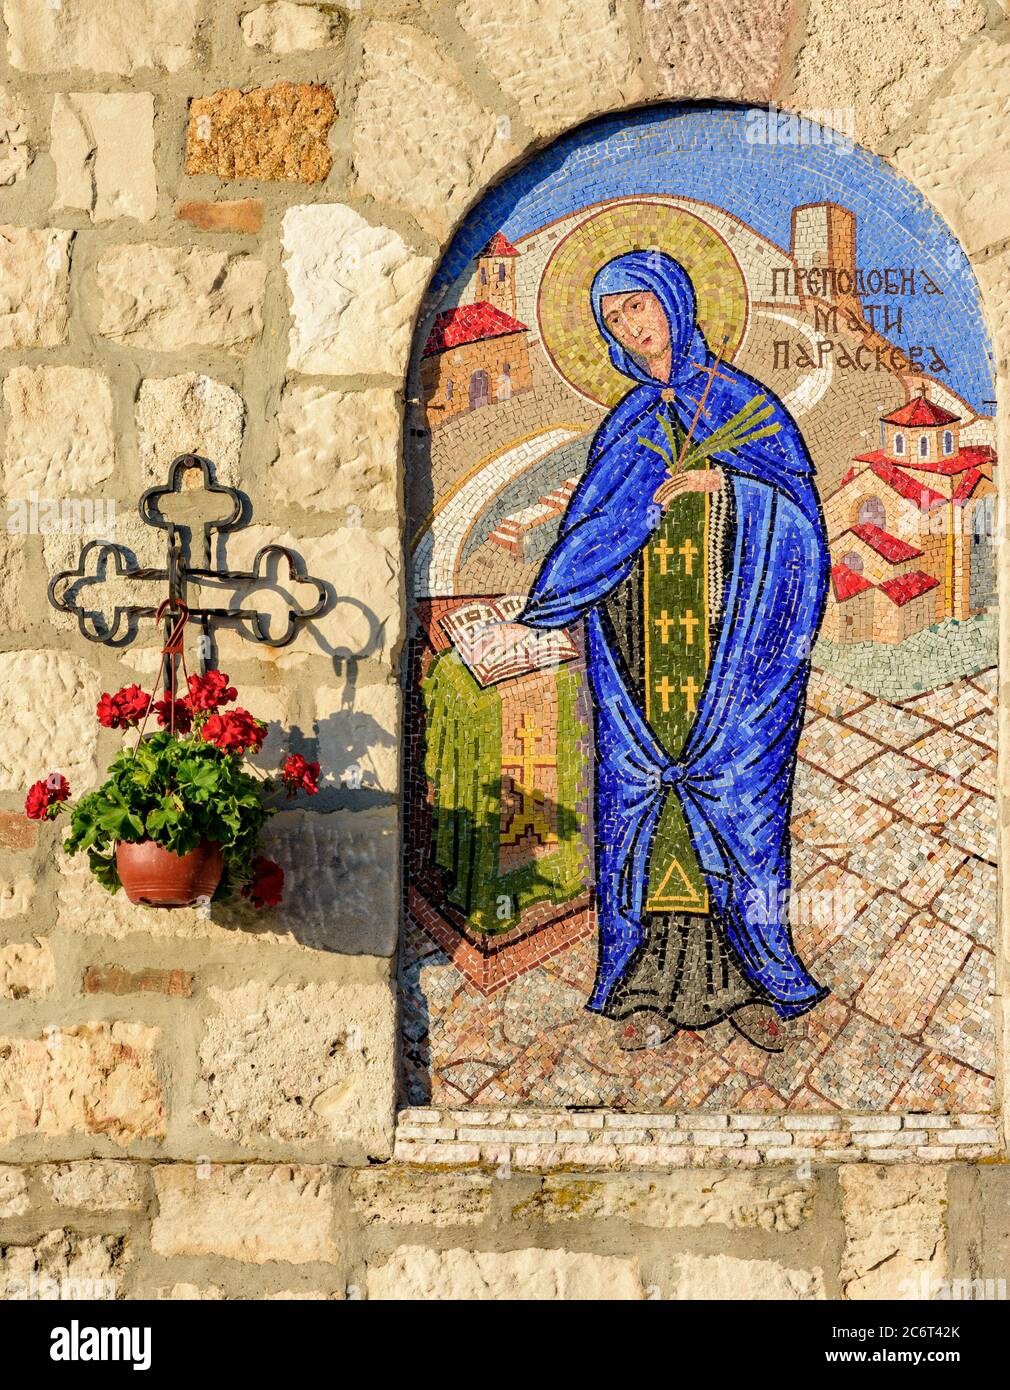 Belgrado / Serbia - 6 giugno 2019: Icona religiosa a mosaico di San Petka Paraskeva (santa cristiana ascetica femminile del 10 ° secolo) presso il CH di San Petka Foto Stock